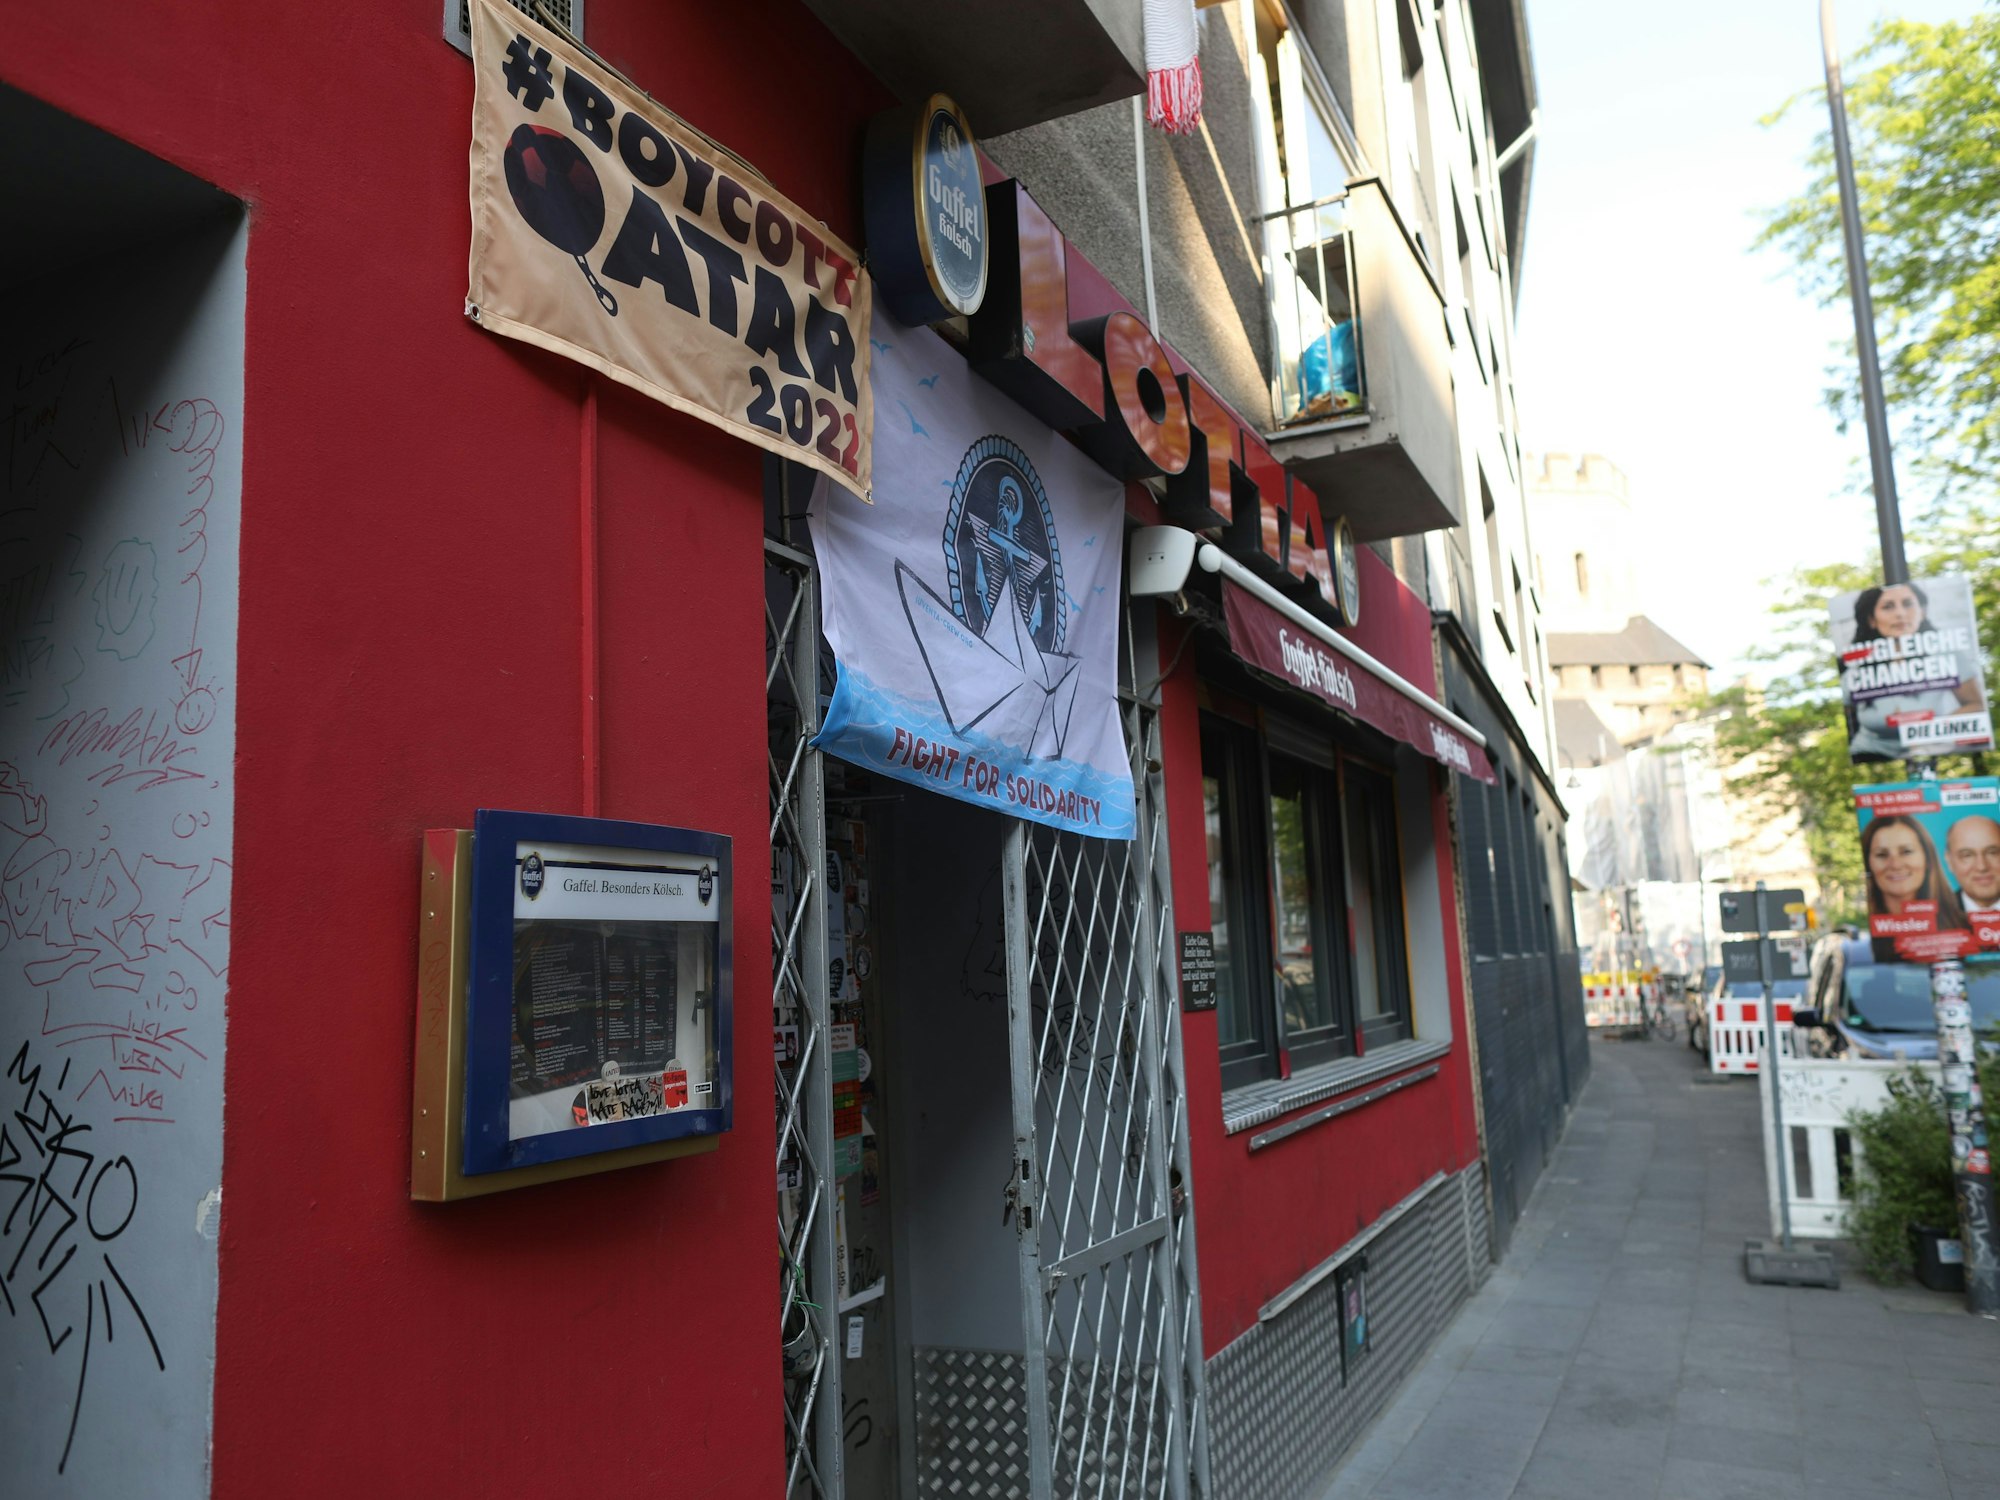 Ein Plakat über der Bar "Lotta" weist darauf hin, dass die Bar keine Fußball-WM im Fernsehen zeigt.